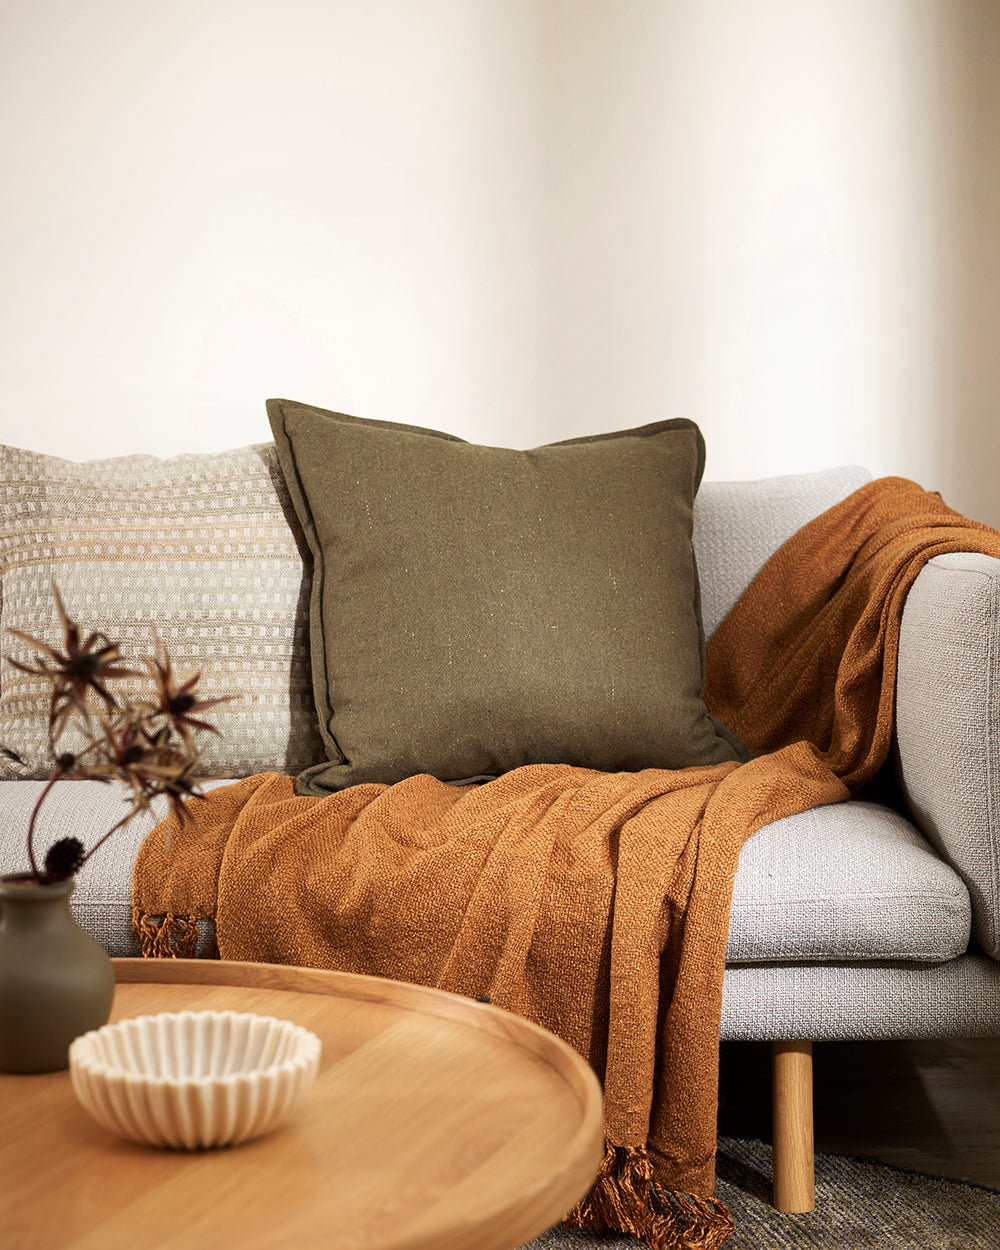 Maximum felt khaki cushion on a grey sofa with a rust coloured throw and textured beige cushion alongside